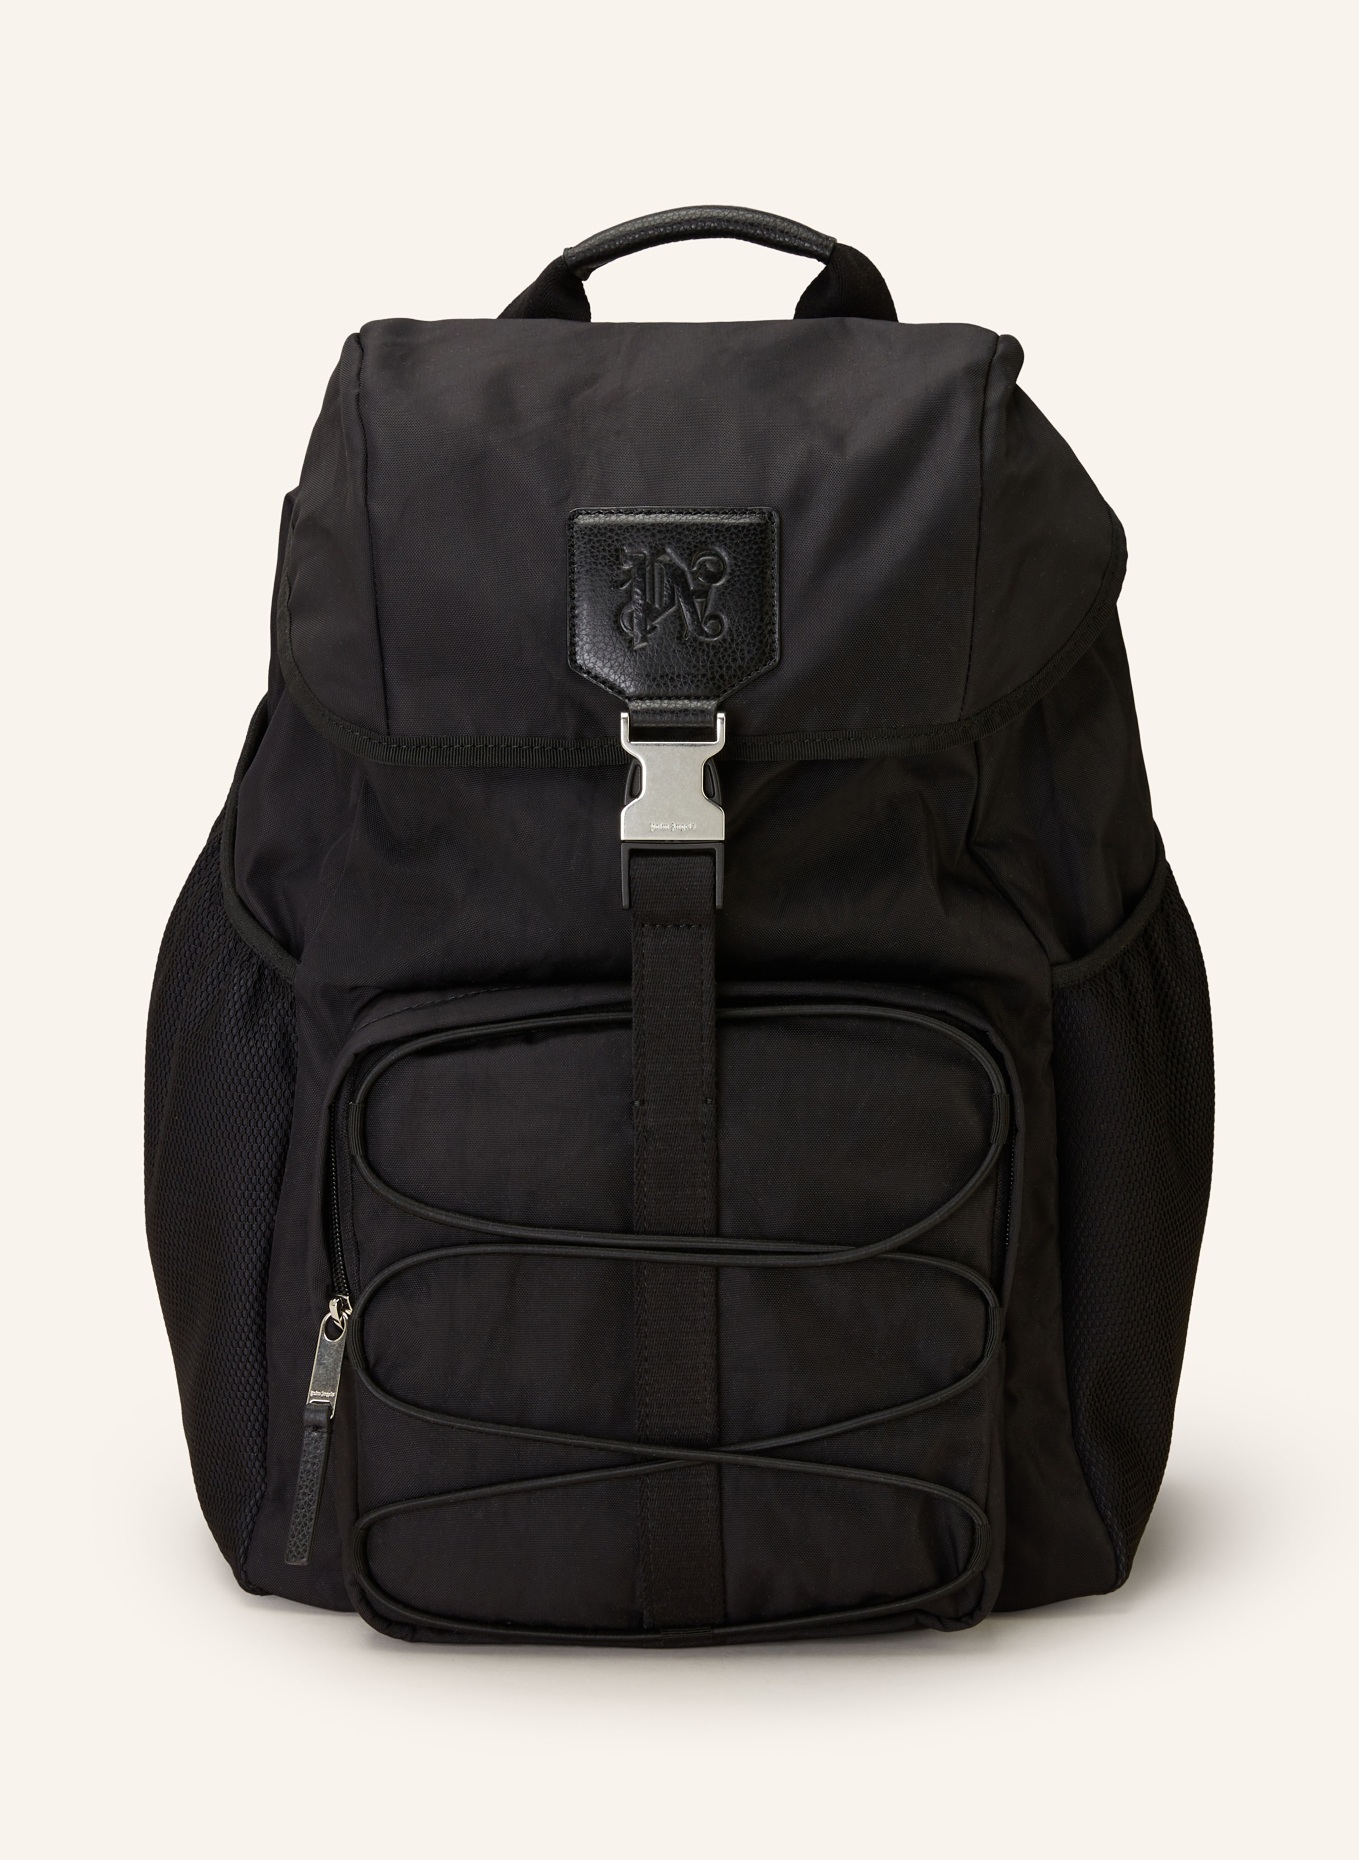 Palm Angels Backpack, Color: BLACK (Image 1)